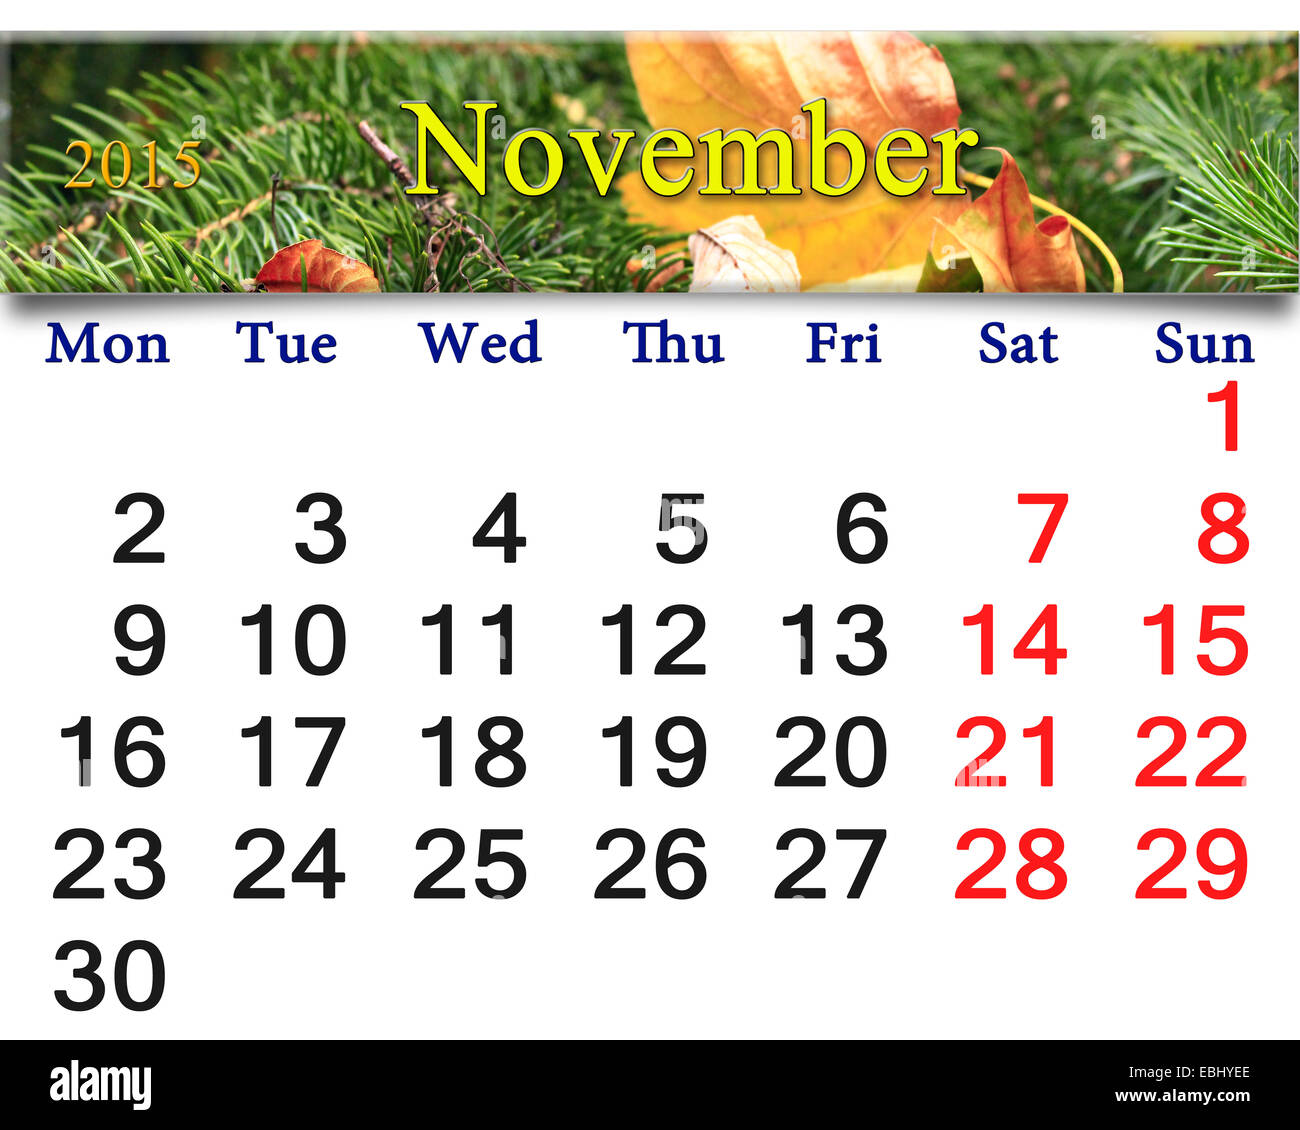 Calendario de noviembre de 2015 con la cinta amarilla de hoja seca en el Evergreen spruce Foto de stock